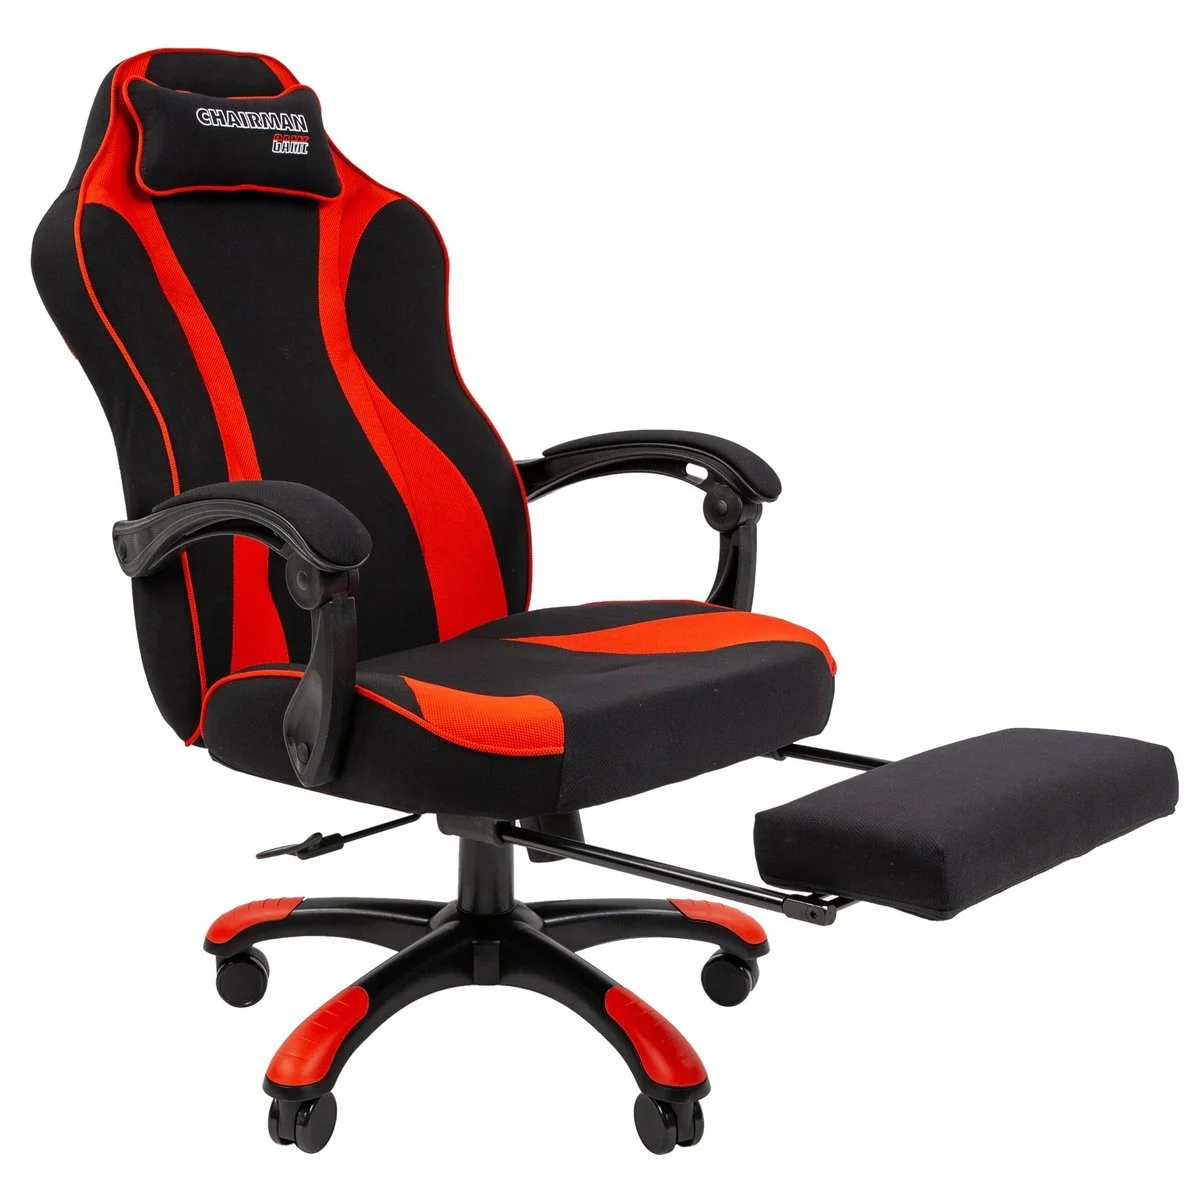 Геймерское компьютерное кресло CHAIRMAN GAME 35, ткань, черный/красный